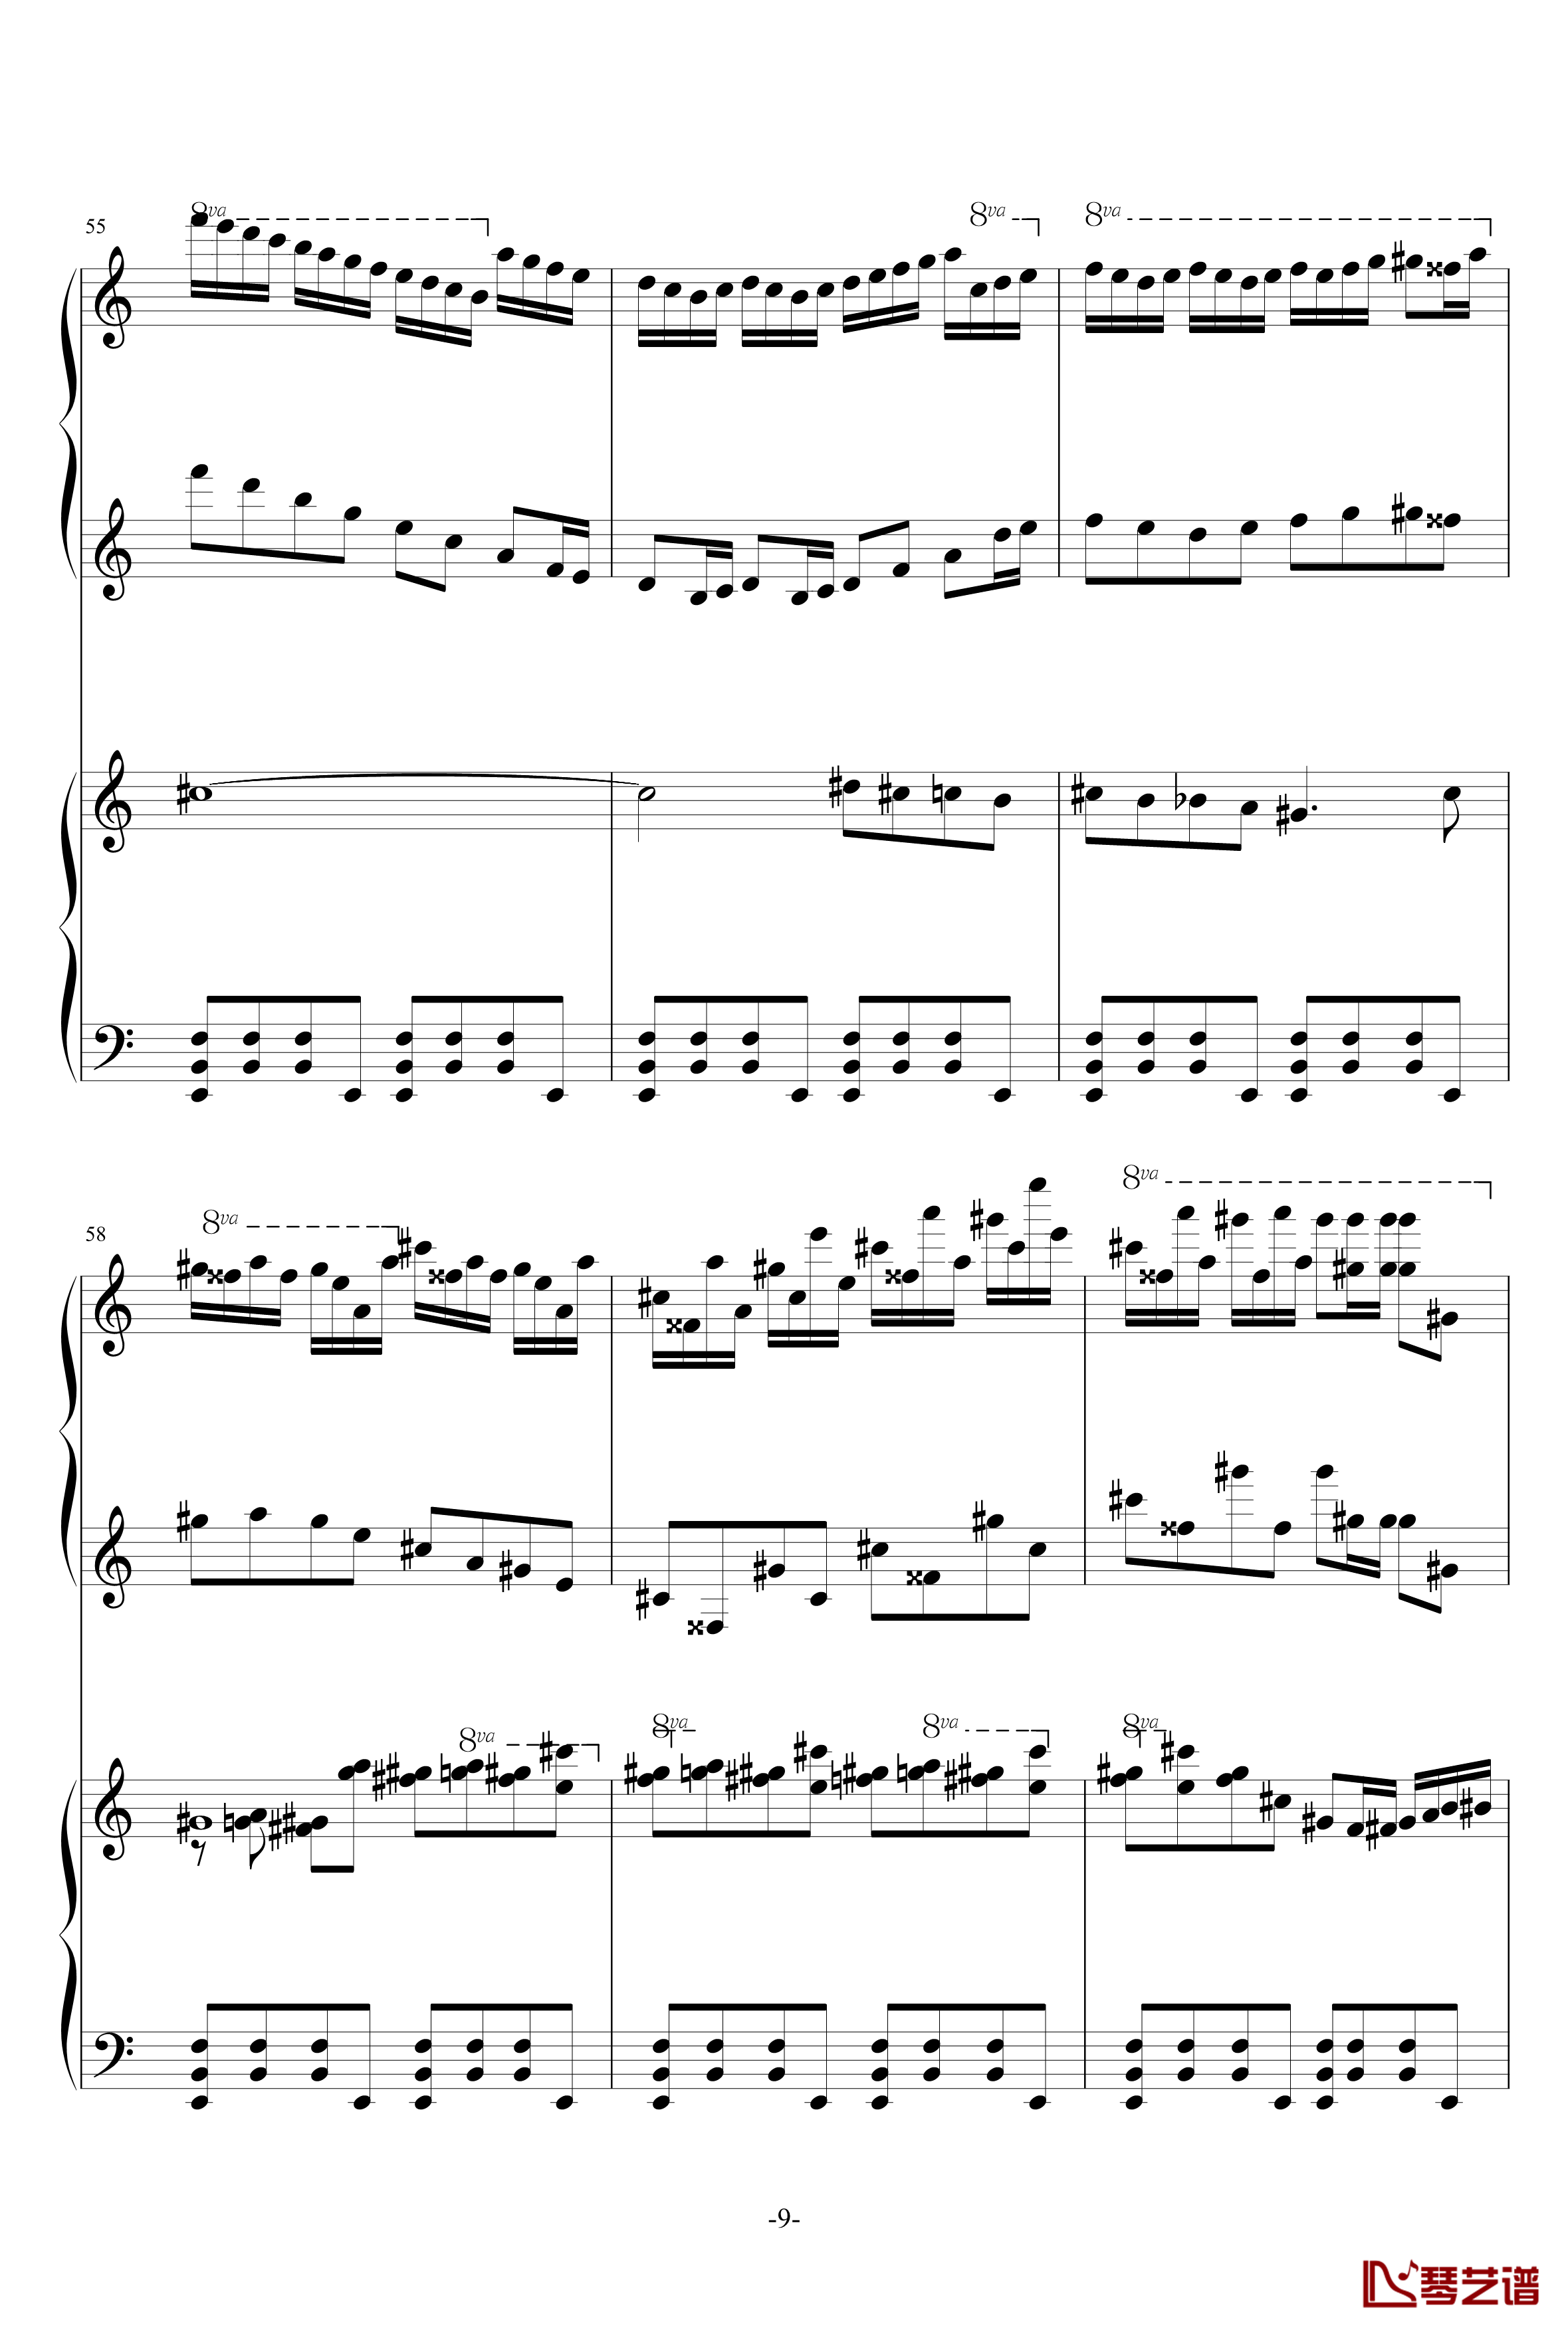 普罗科菲耶夫第三钢琴协奏曲第二乐章钢琴谱9